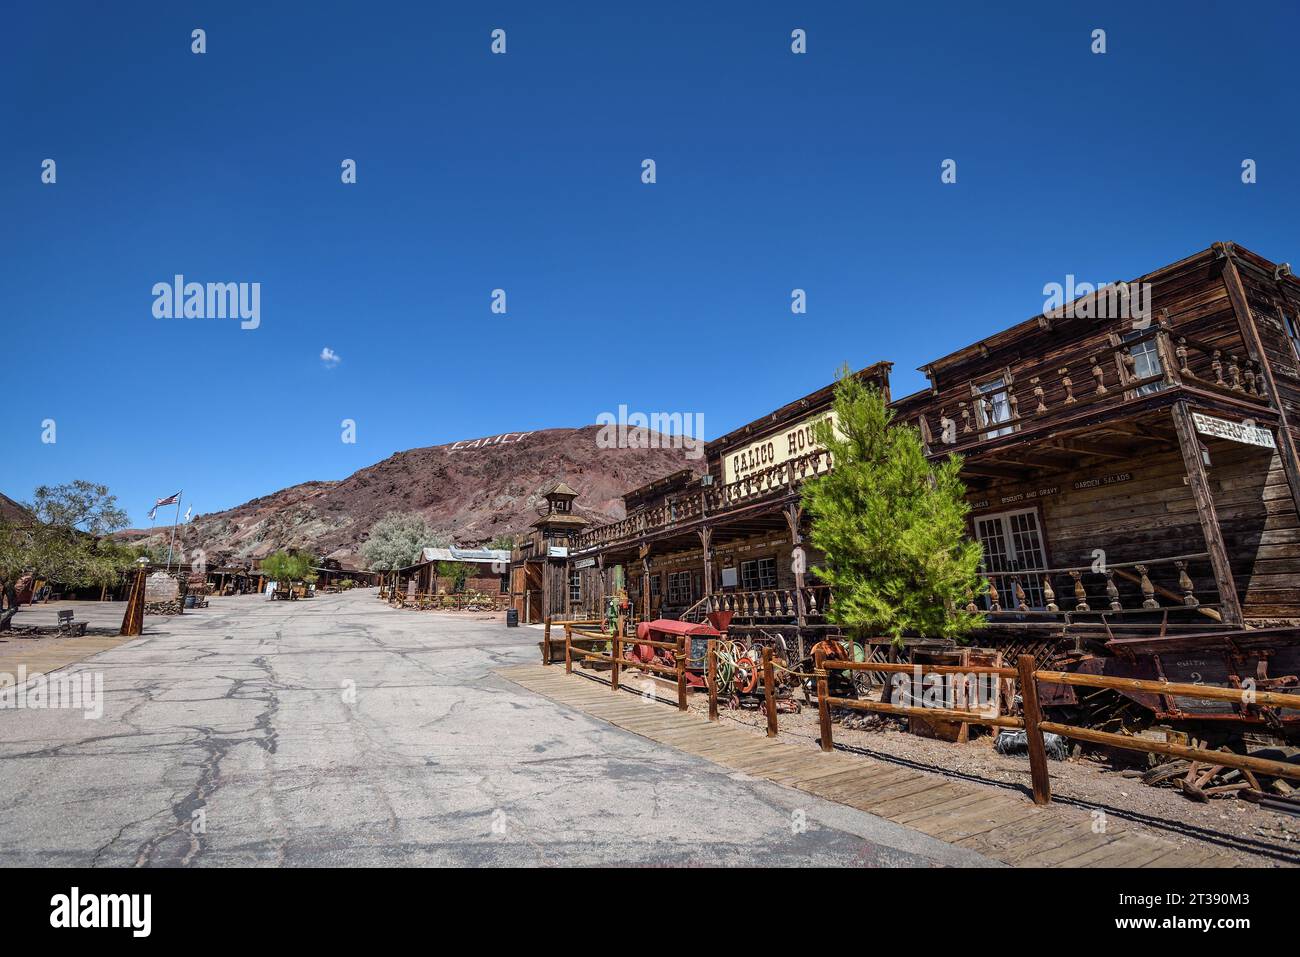 Il paesaggio urbano della città fantasma di Calico in una calda giornata estiva - California, USA Foto Stock